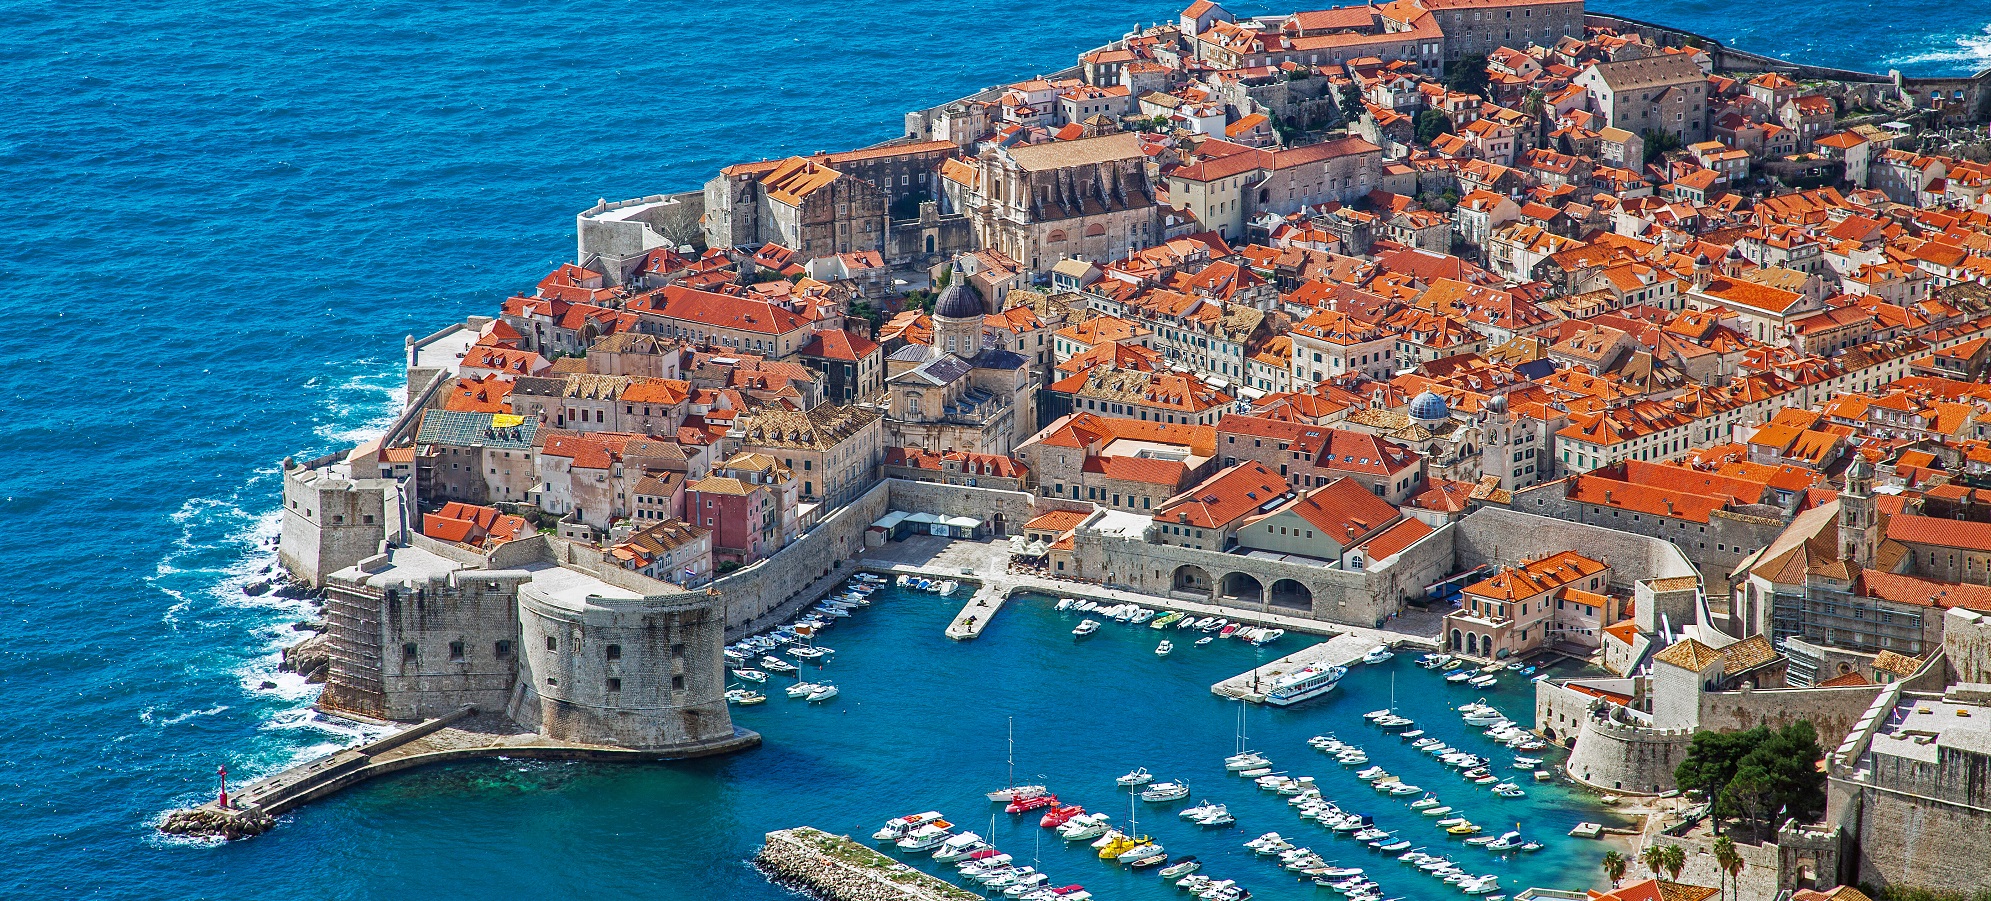 UNESCO svjetske baštine u Dalmaciji: od Zadra do Dubrovnika